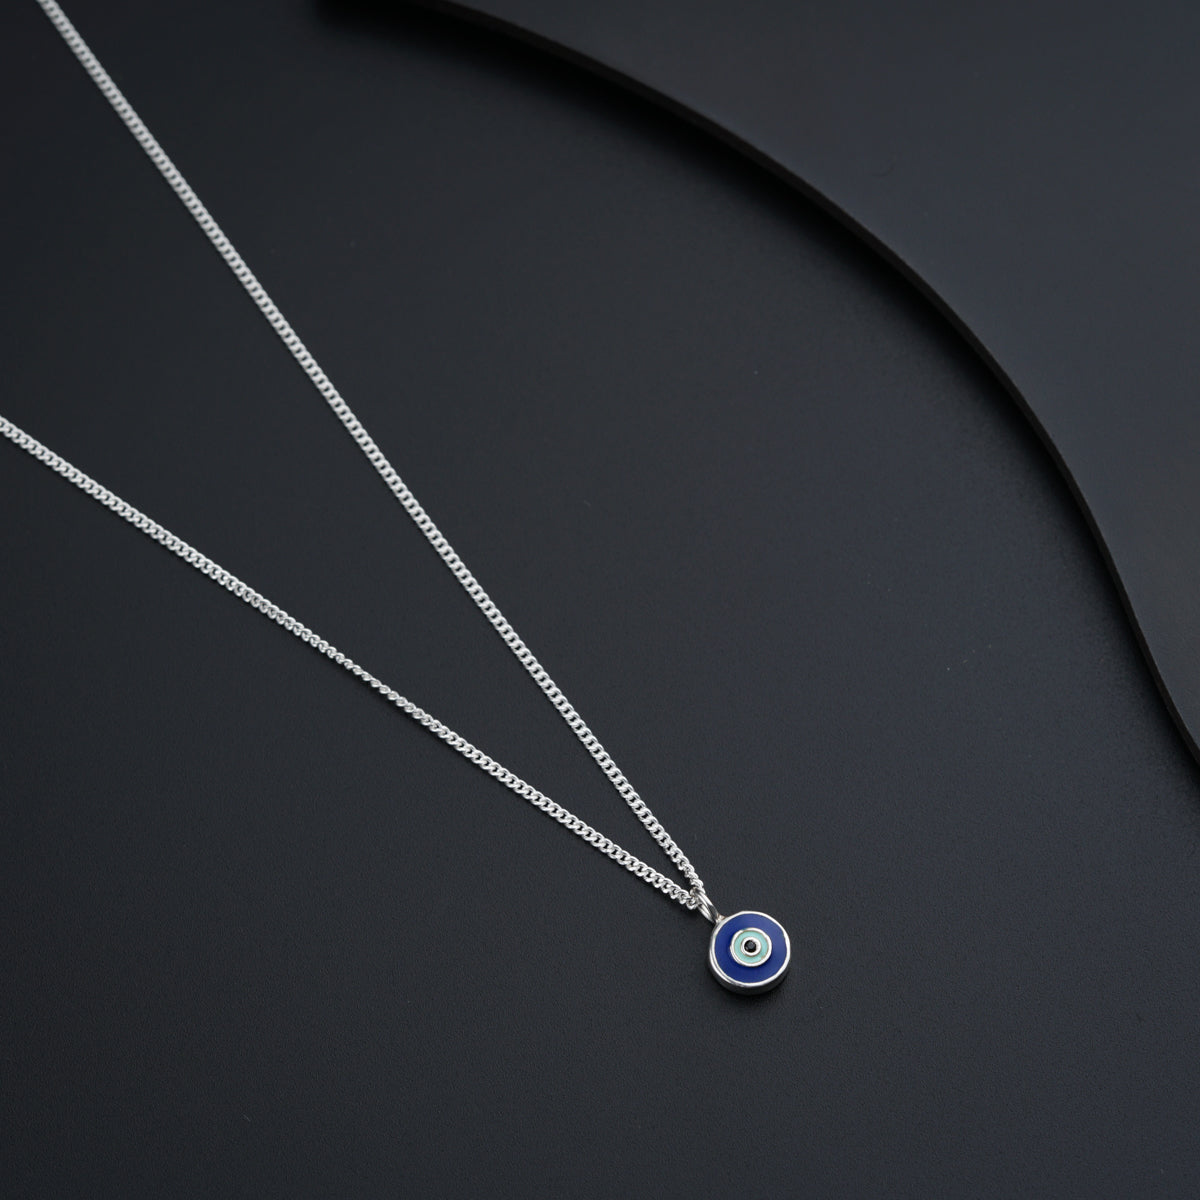 a blue evil eye necklace on a black surface